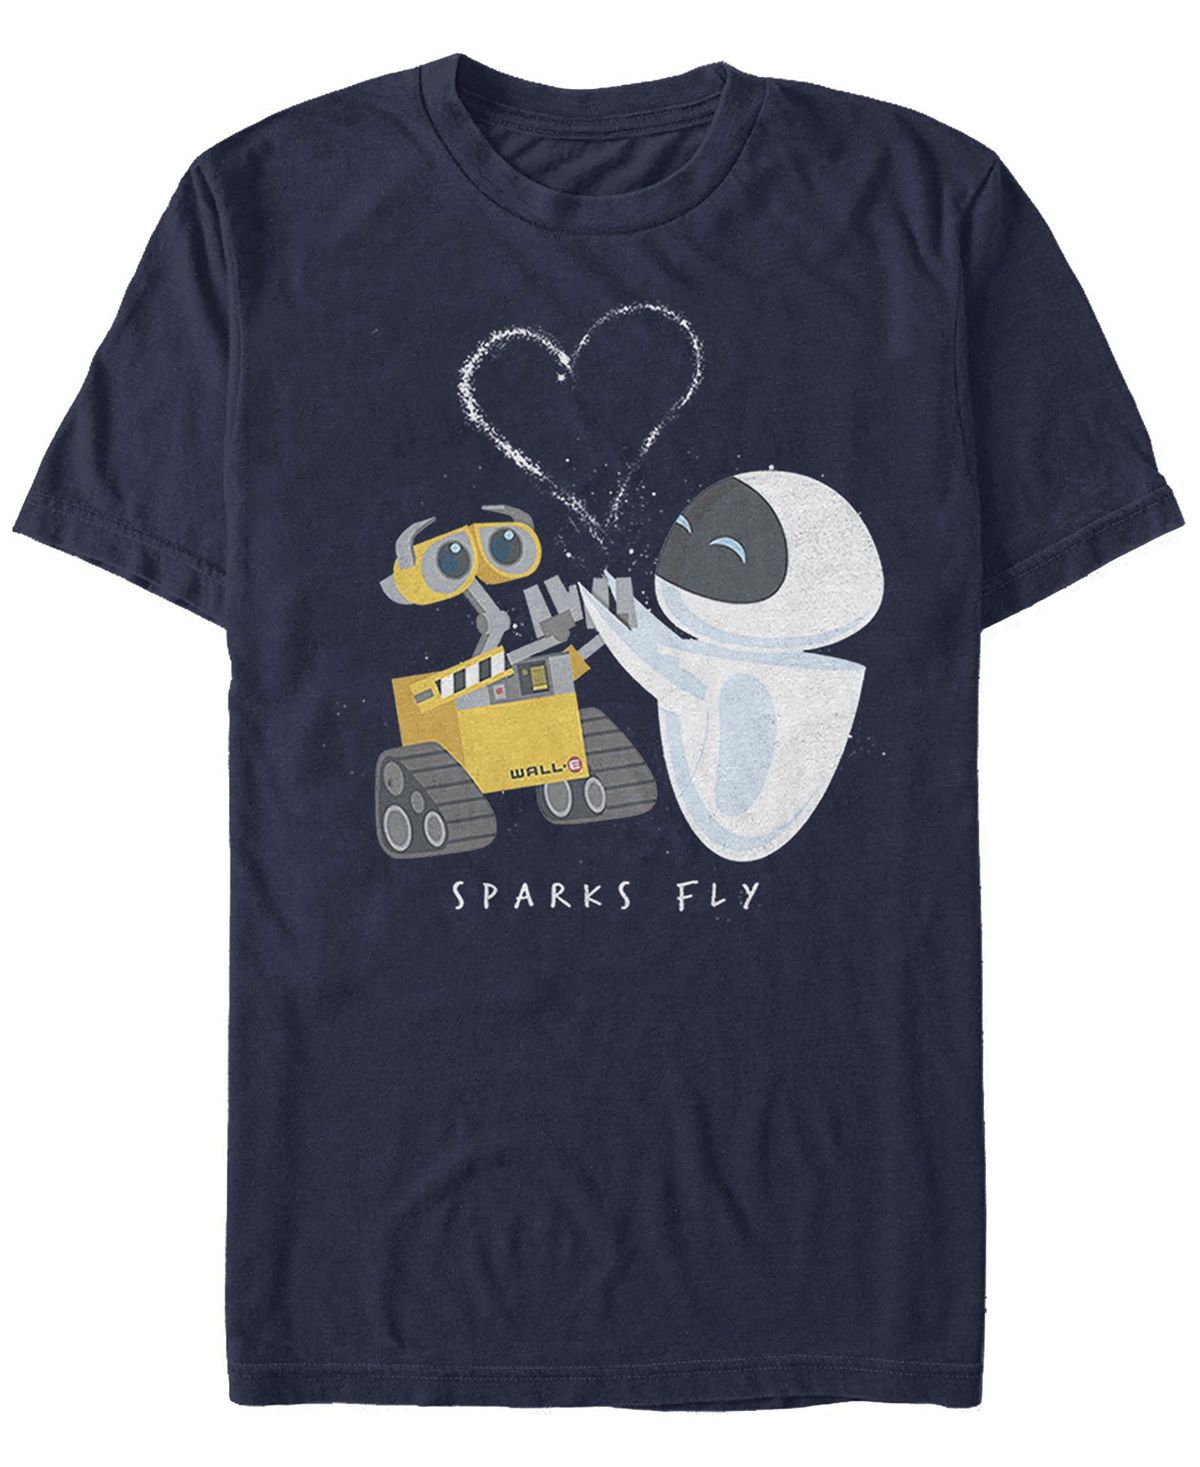 Мужская футболка с короткими рукавами и круглым вырезом Sparks Fly Fifth Sun